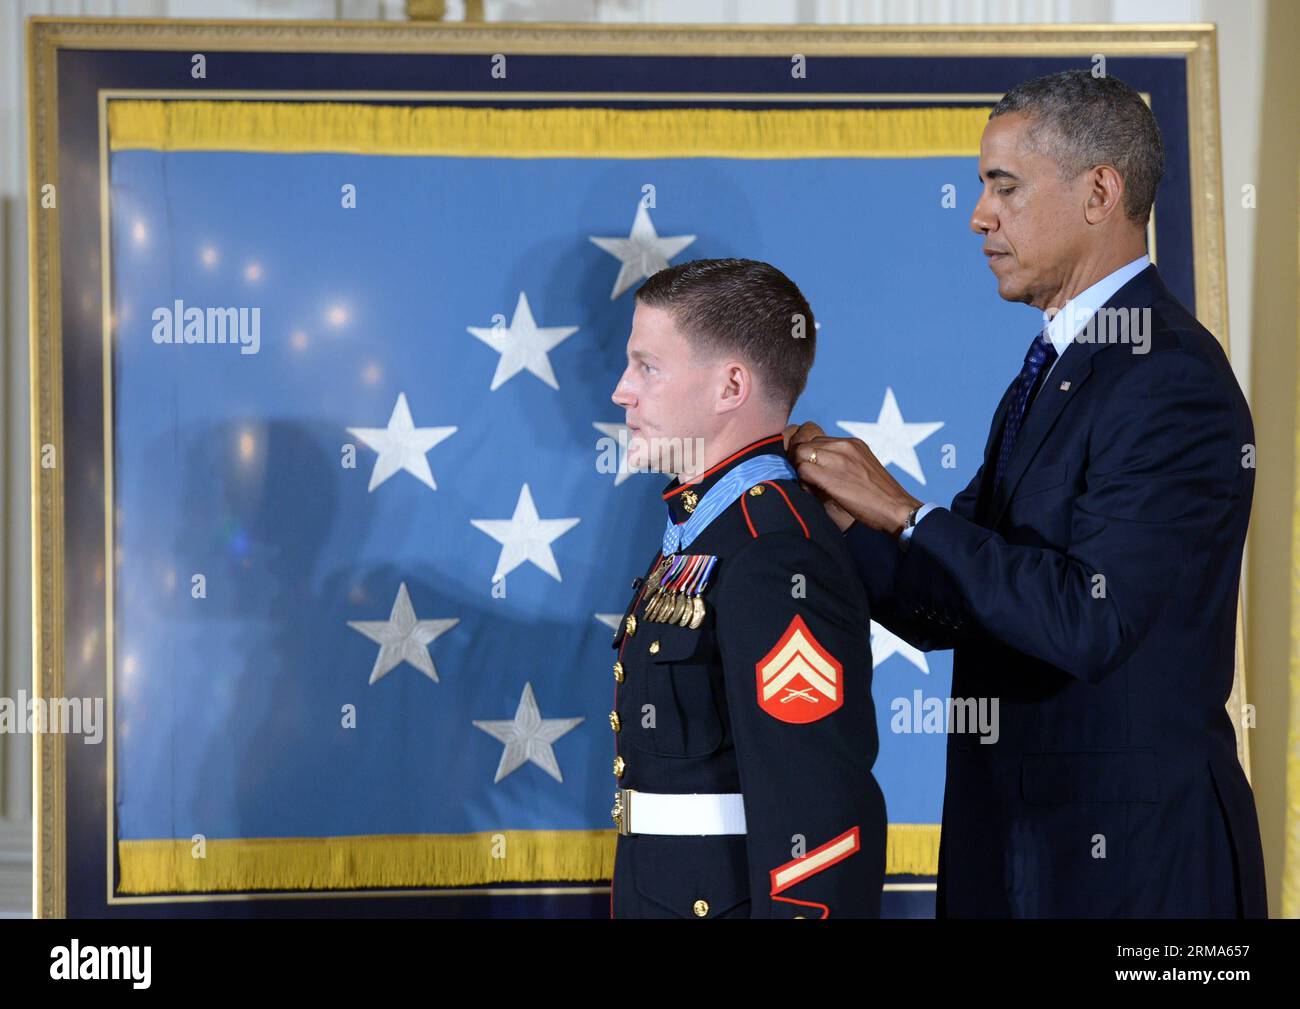 (140619) -- WASHINGTON D.C., 19 giugno 2014 (Xinhua) -- William Kyle Carpenter (L) riceve la Medal of Honor dal presidente degli Stati Uniti Barack Obama durante una cerimonia nella sala orientale della Casa Bianca a Washington D.C., negli Stati Uniti, il 19 giugno 2014. Carpenter ha ricevuto la medaglia per aver coperto una granata per salvare i suoi compagni marines durante un attacco talebano nel novembre 2010. Carpenter è l'ottavo destinatario vivente scelto per il più alto riconoscimento militare. (Xinhua/Yin Bogu) US-WASHINGTON D.C.-MEDAL OF HONOR-CARPENTER PUBLICATIONxNOTxINxCHN Washington D C 19 giugno 2014 XINHUA William Kyle Carpenter l re Foto Stock